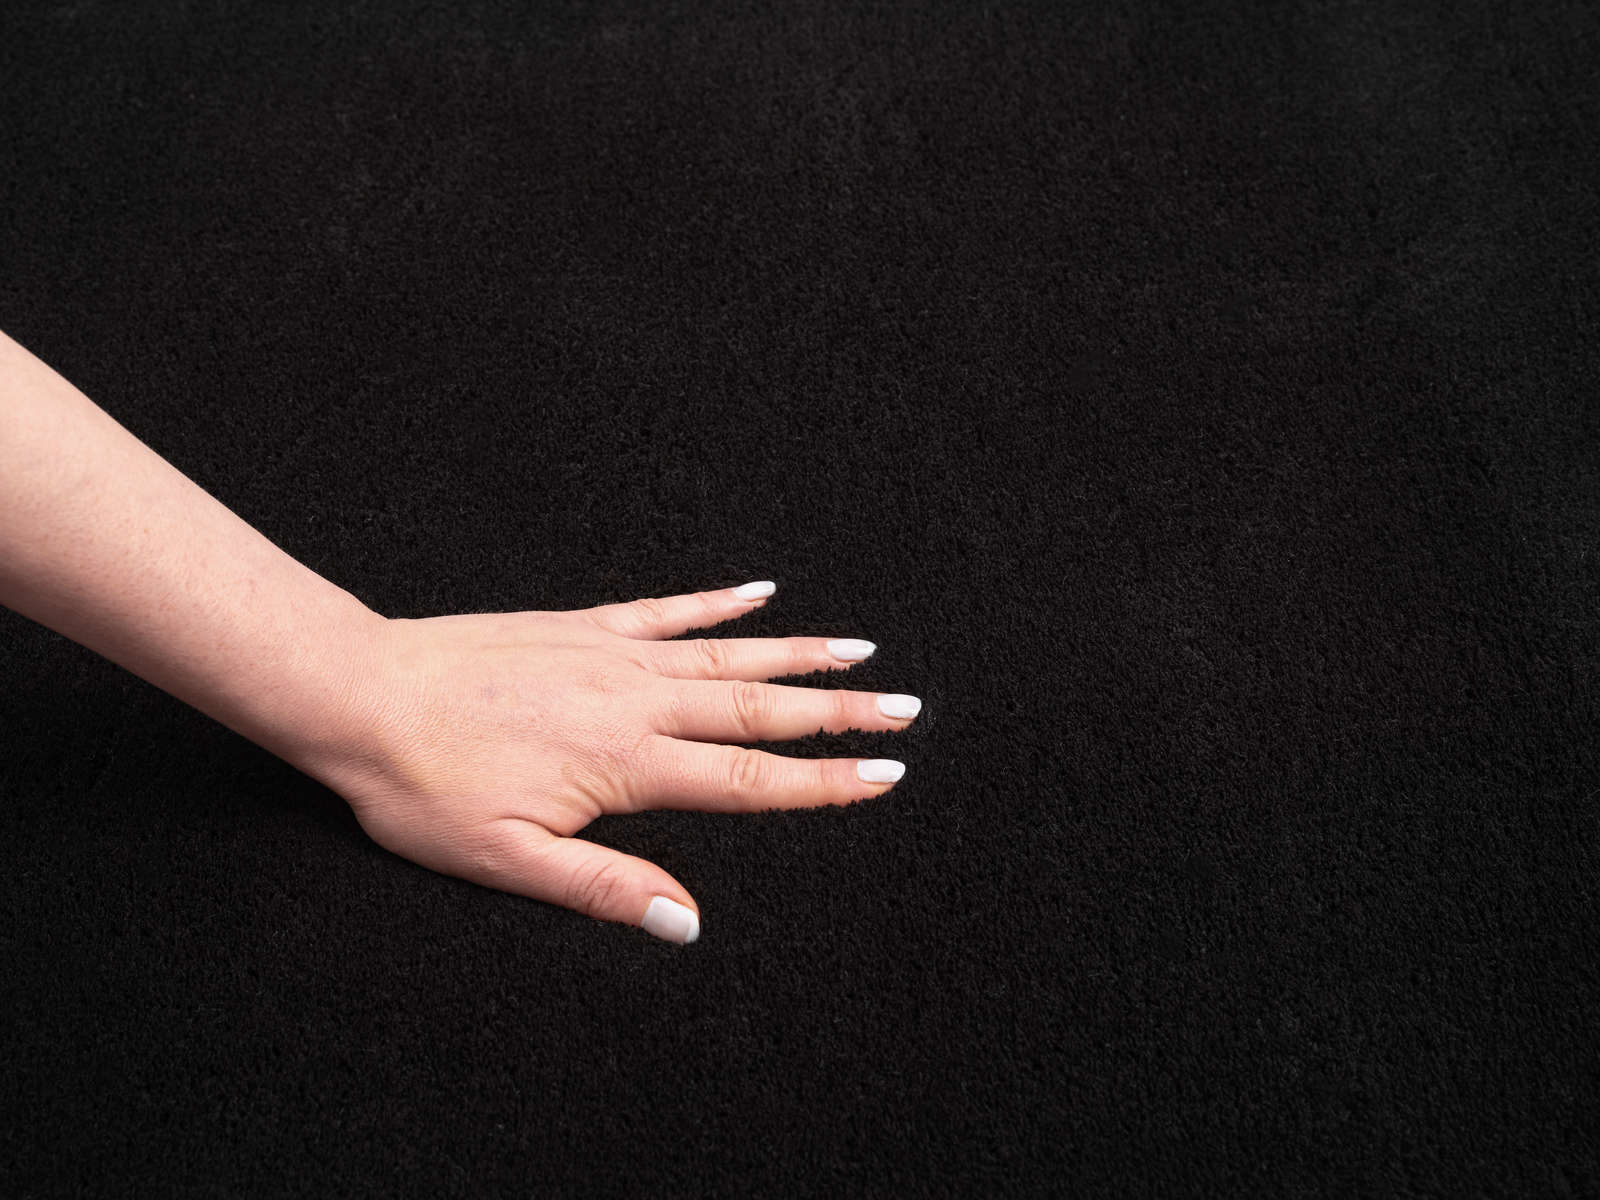             Fluweelzacht hoogpolig tapijt in zwart - 110 x 60 cm
        